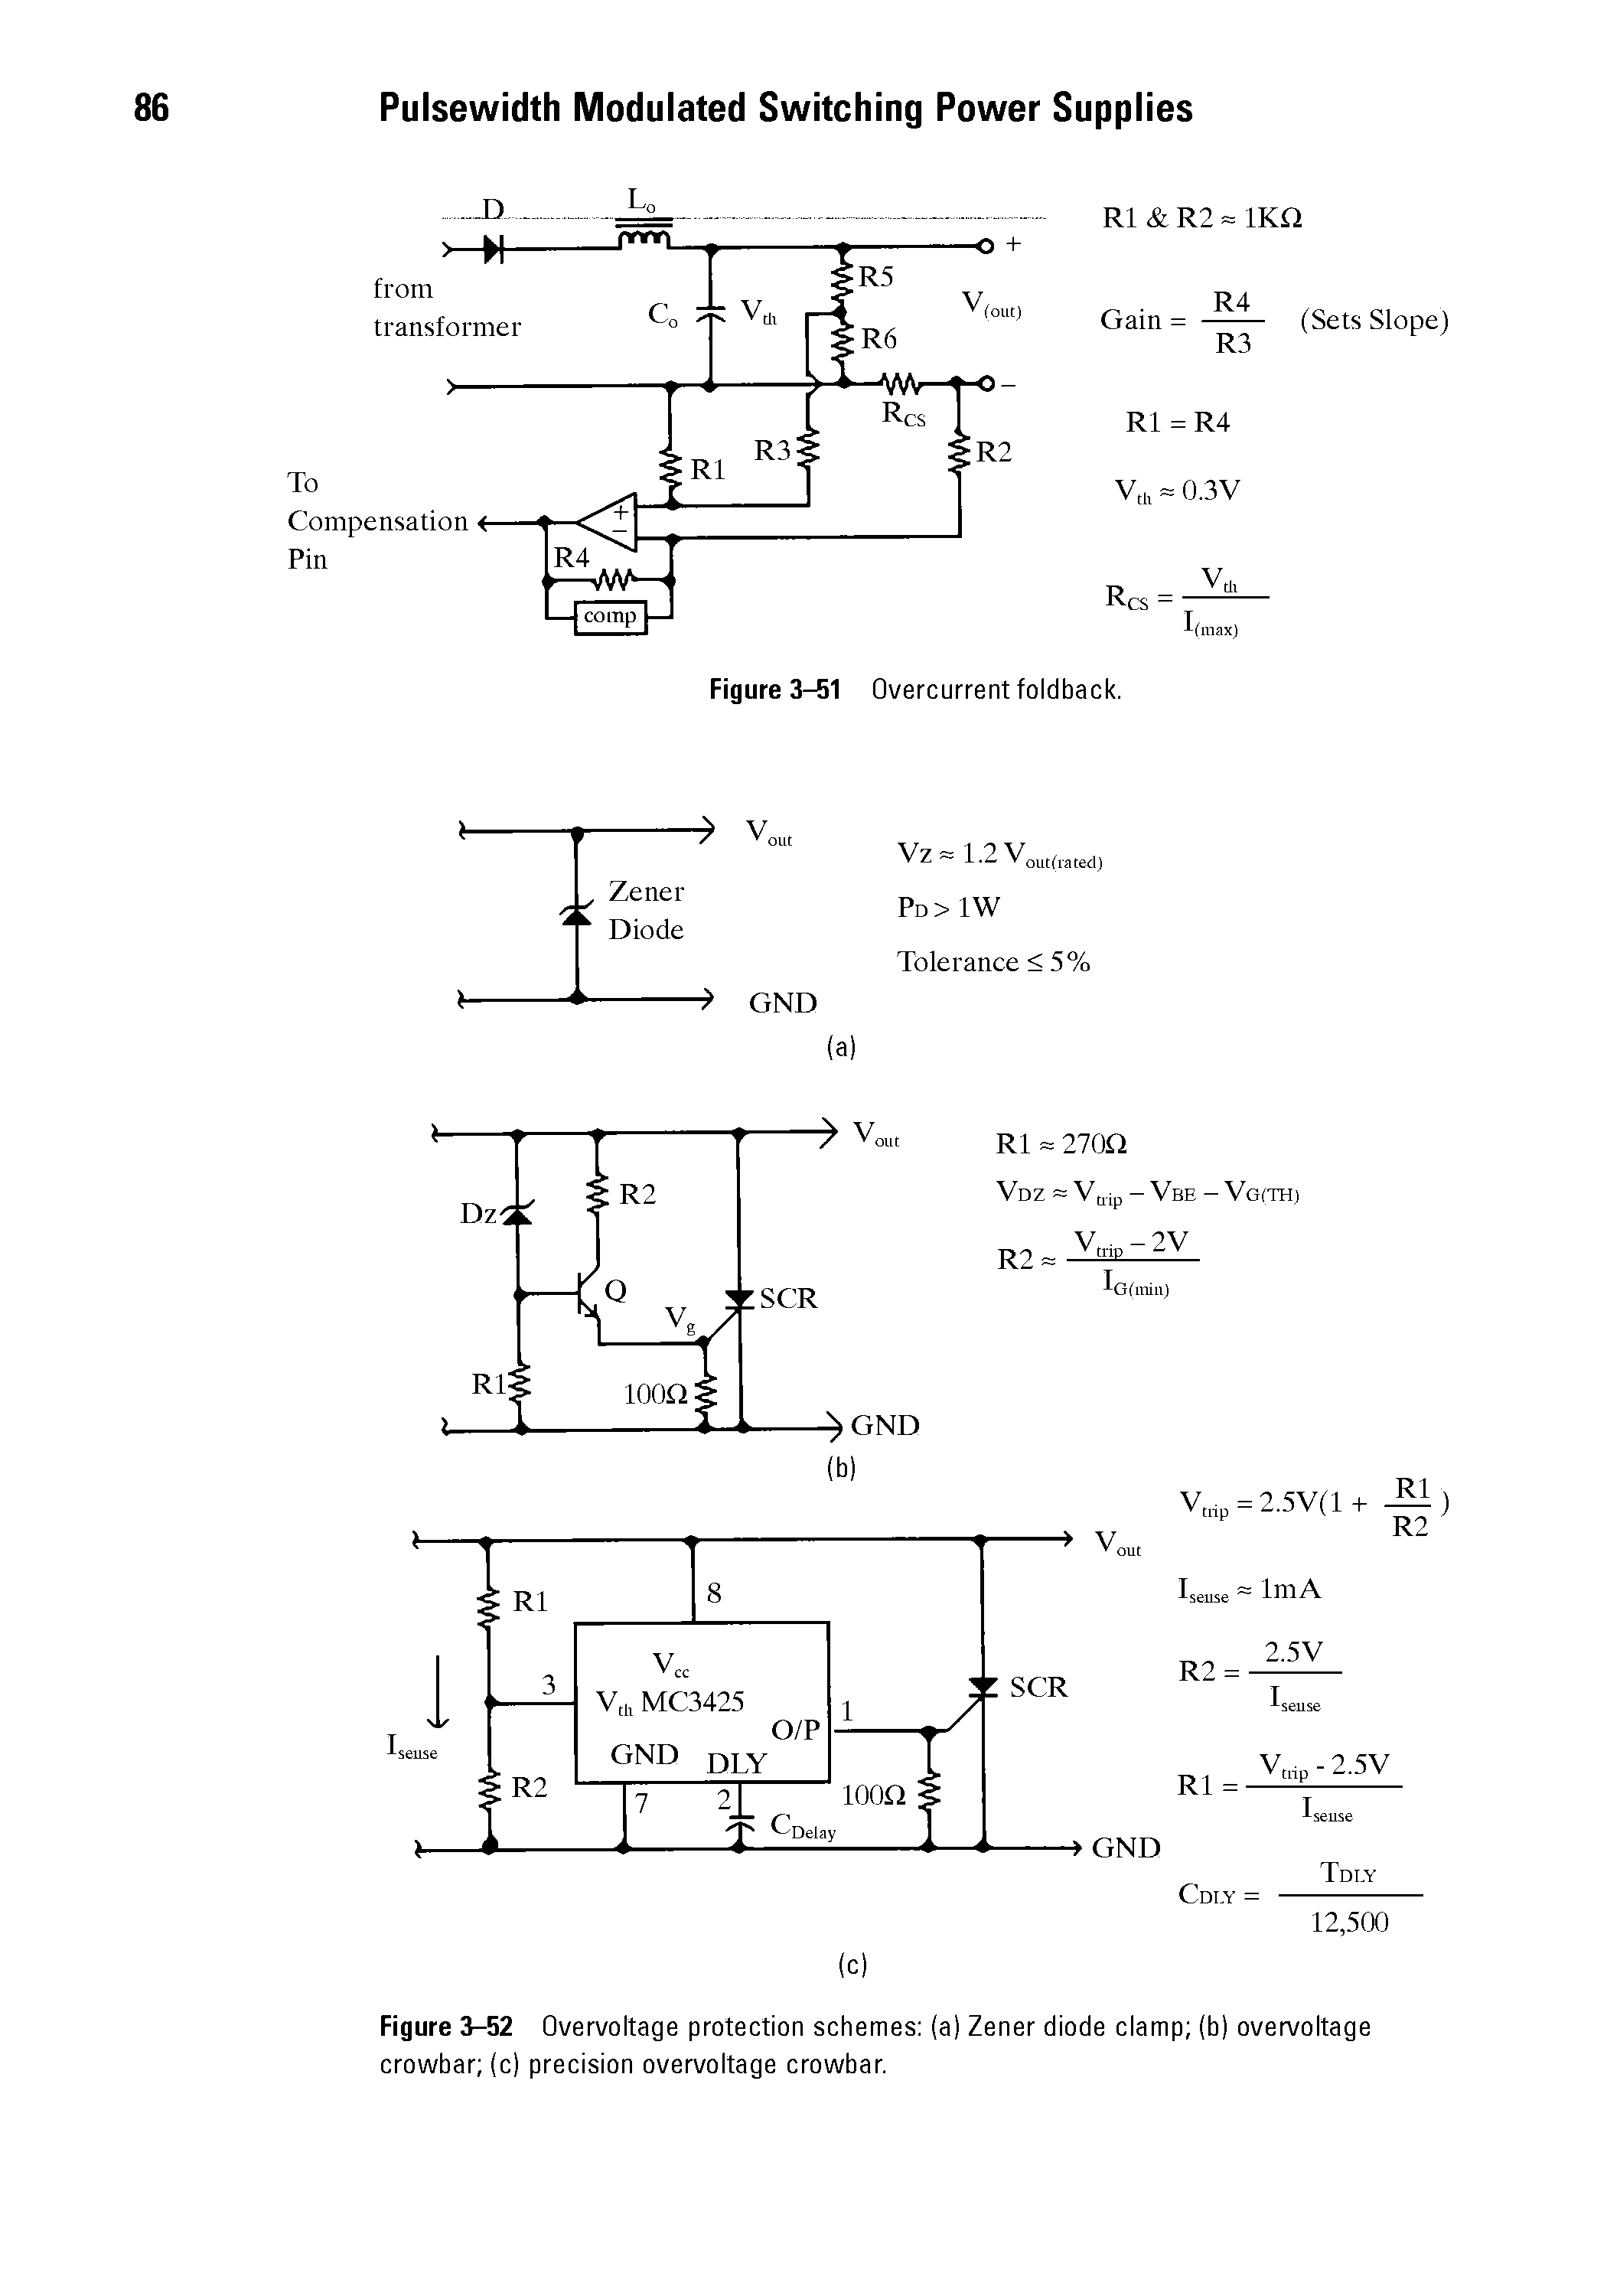 Figure 3-52 Overvoltage protection schemes (a) Zener diode clamp (b) overvoltage crowbar (c) precision overvoltage crowbar.